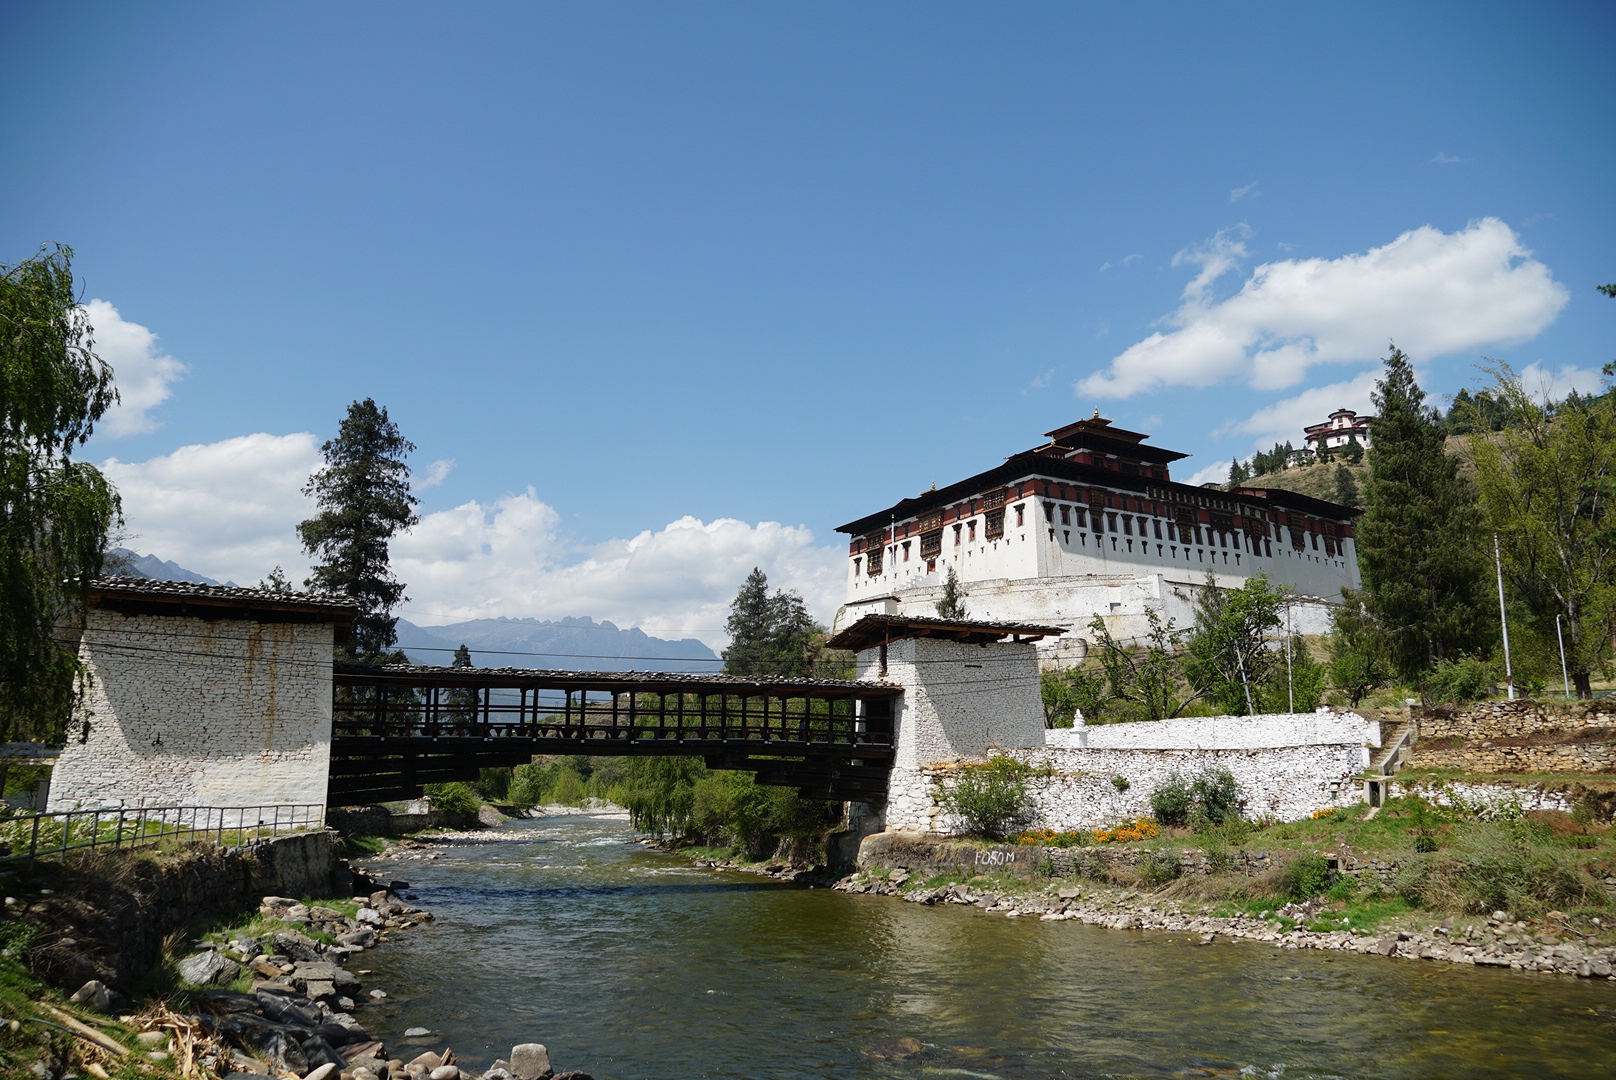 Ringpung dzong in Paro